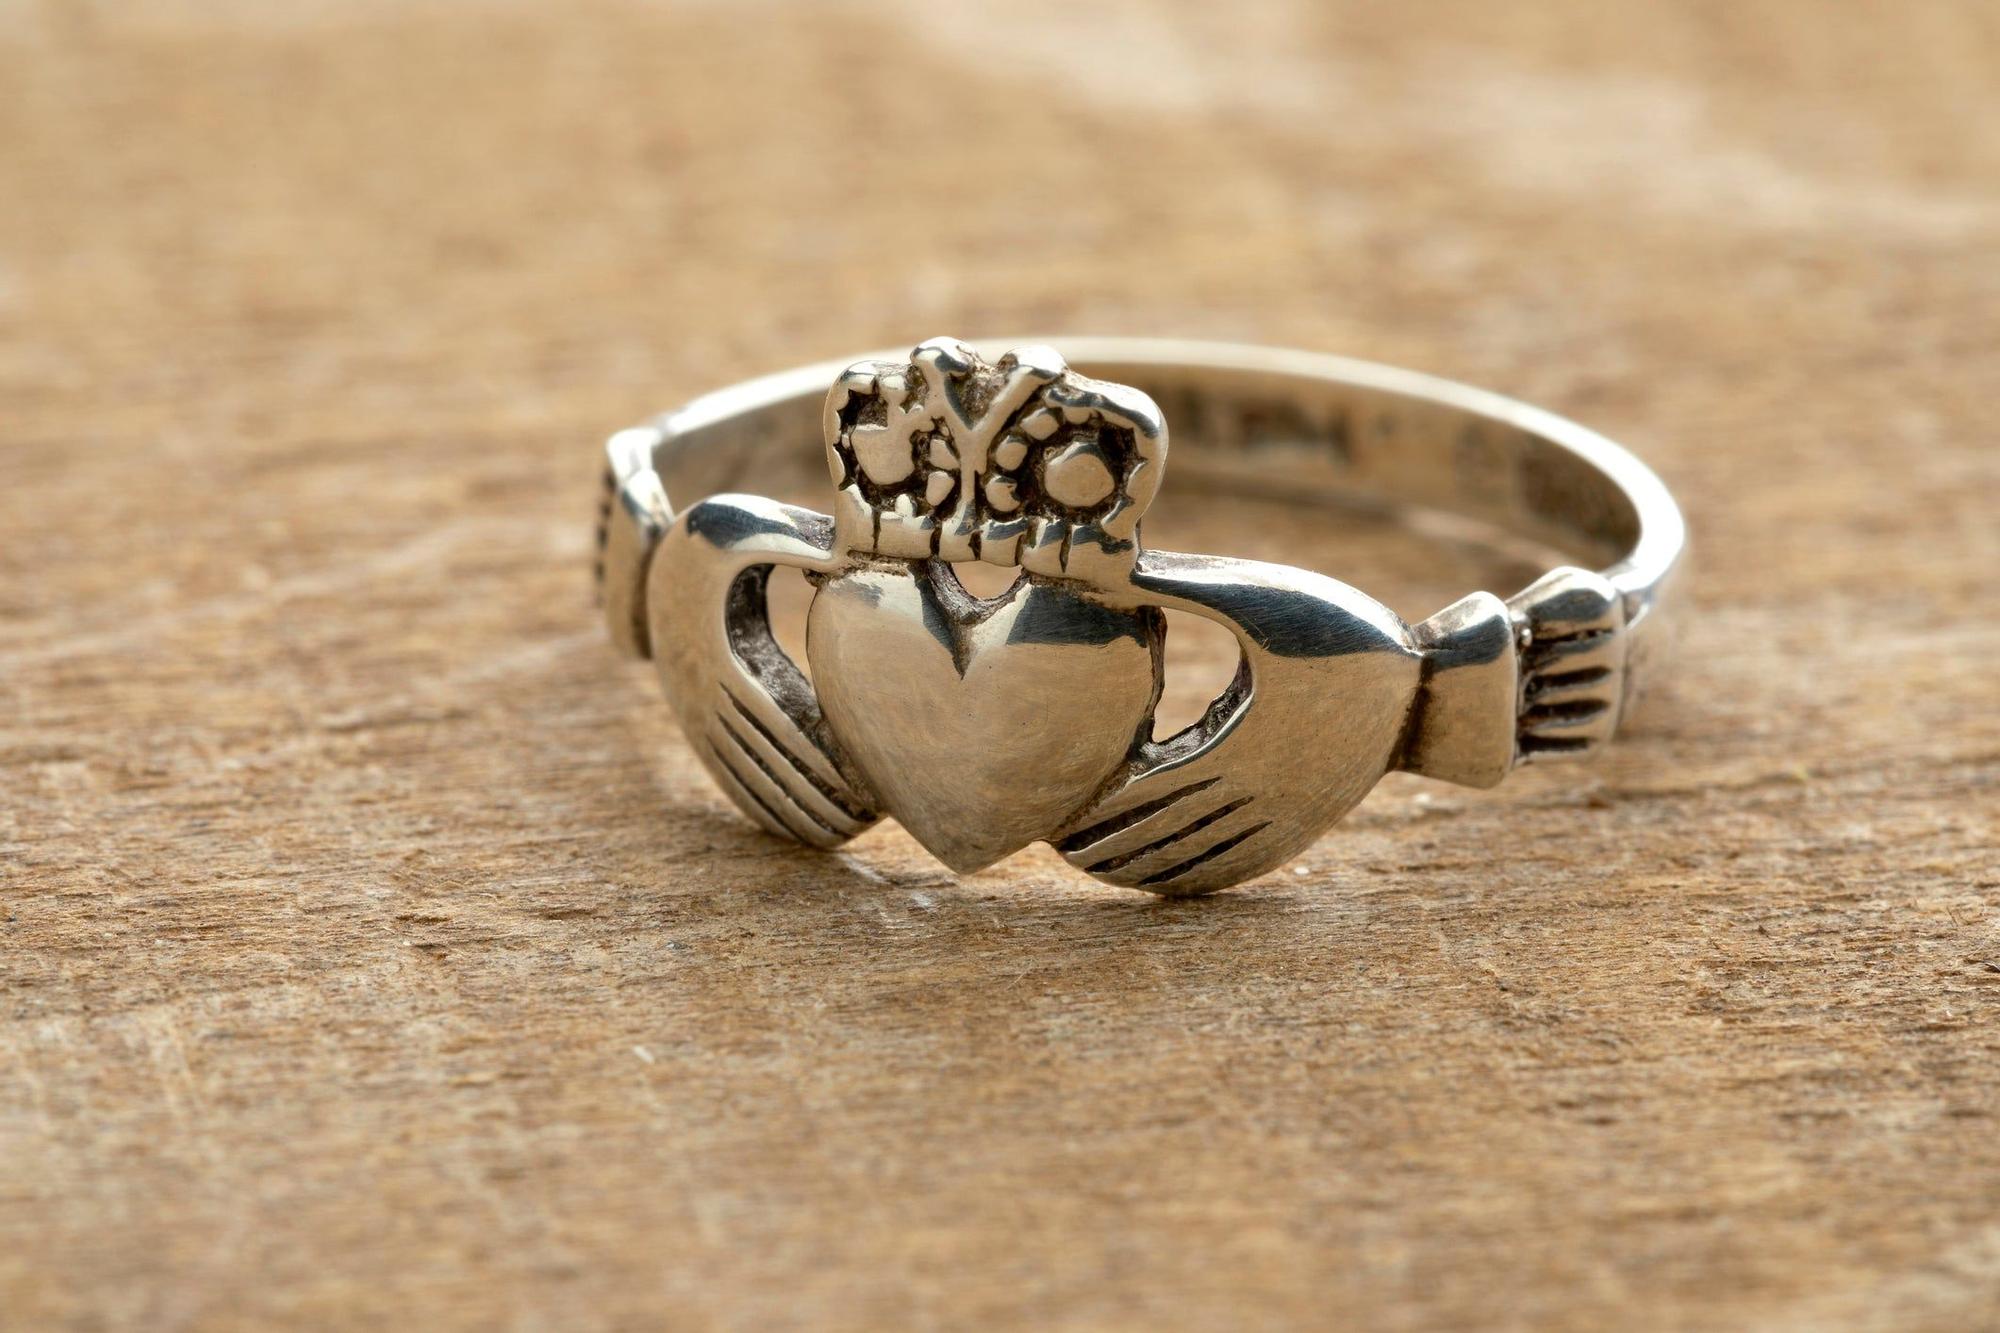 Por qué todos quieren el anillo de Claddagh, símbolo irlandés del amor? -  Viajar